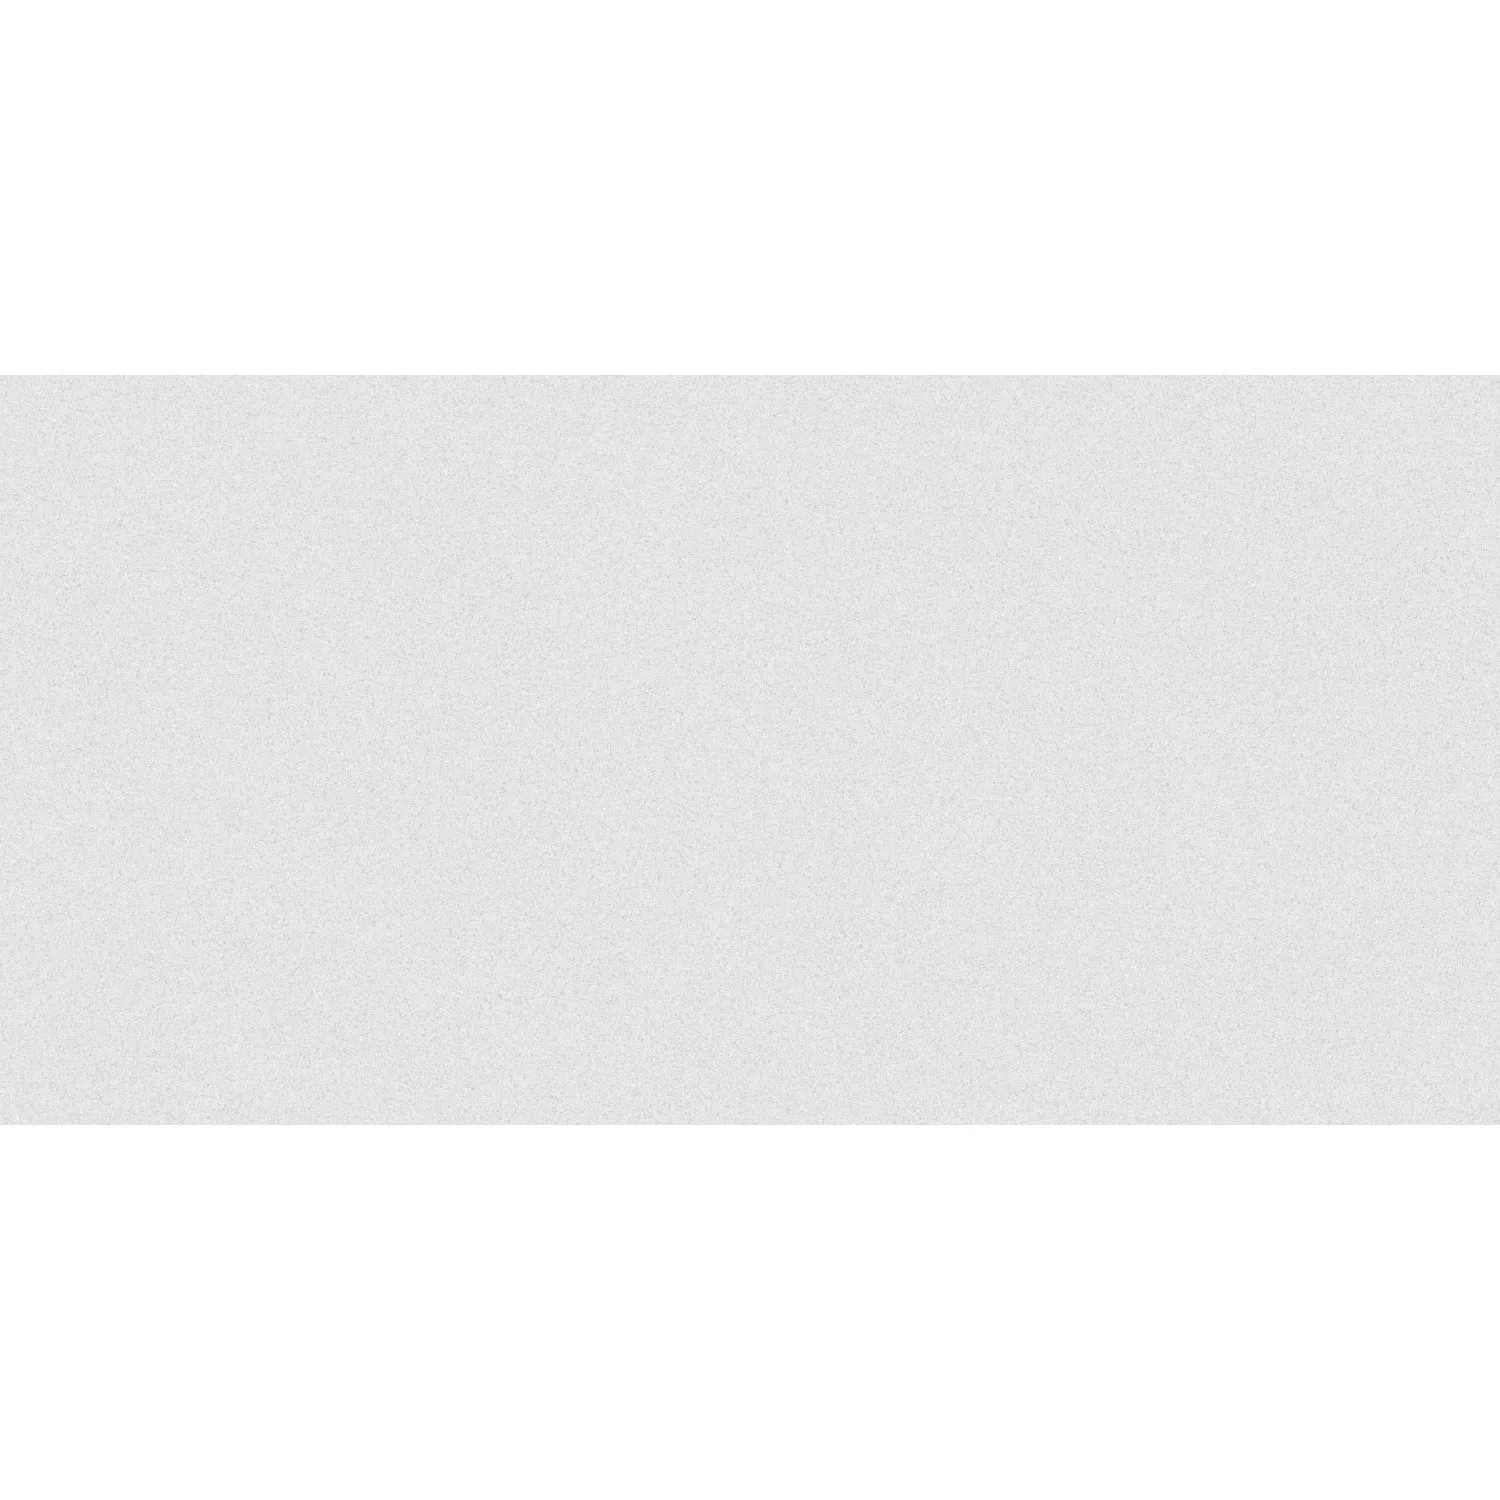 Bodenfliese Bellissima Bianco Steinzeug Weiß Glänzend 30 cm x 60 cm günstig online kaufen